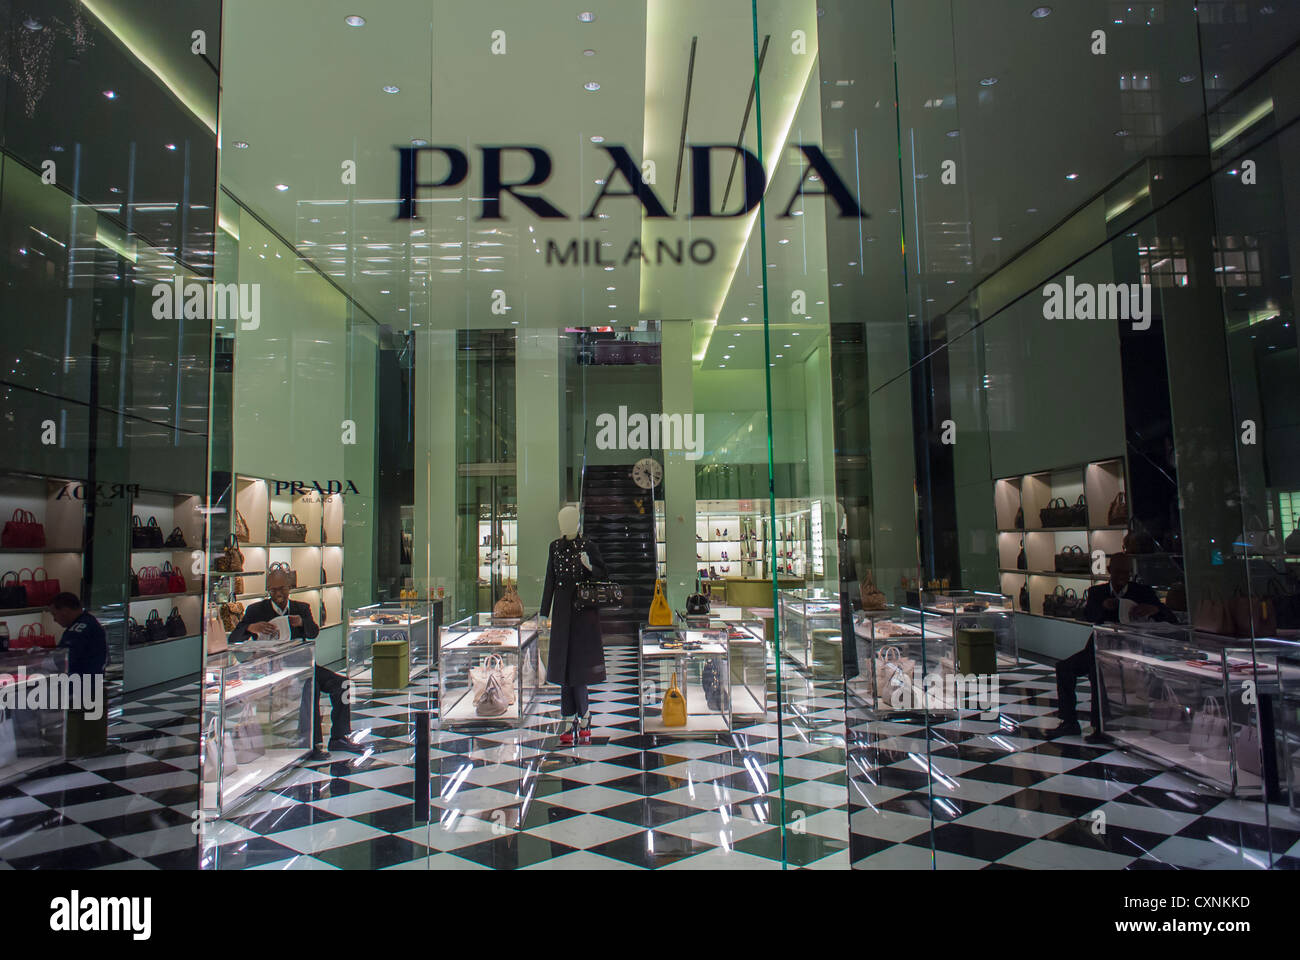 Nueva York, Prada, marcas de moda, tienda de de lujo, tienda de Prada, con logotipo, signo, delanteras de la Quinta Avenida, Manhattan, el nombre de la tienda de ropa de